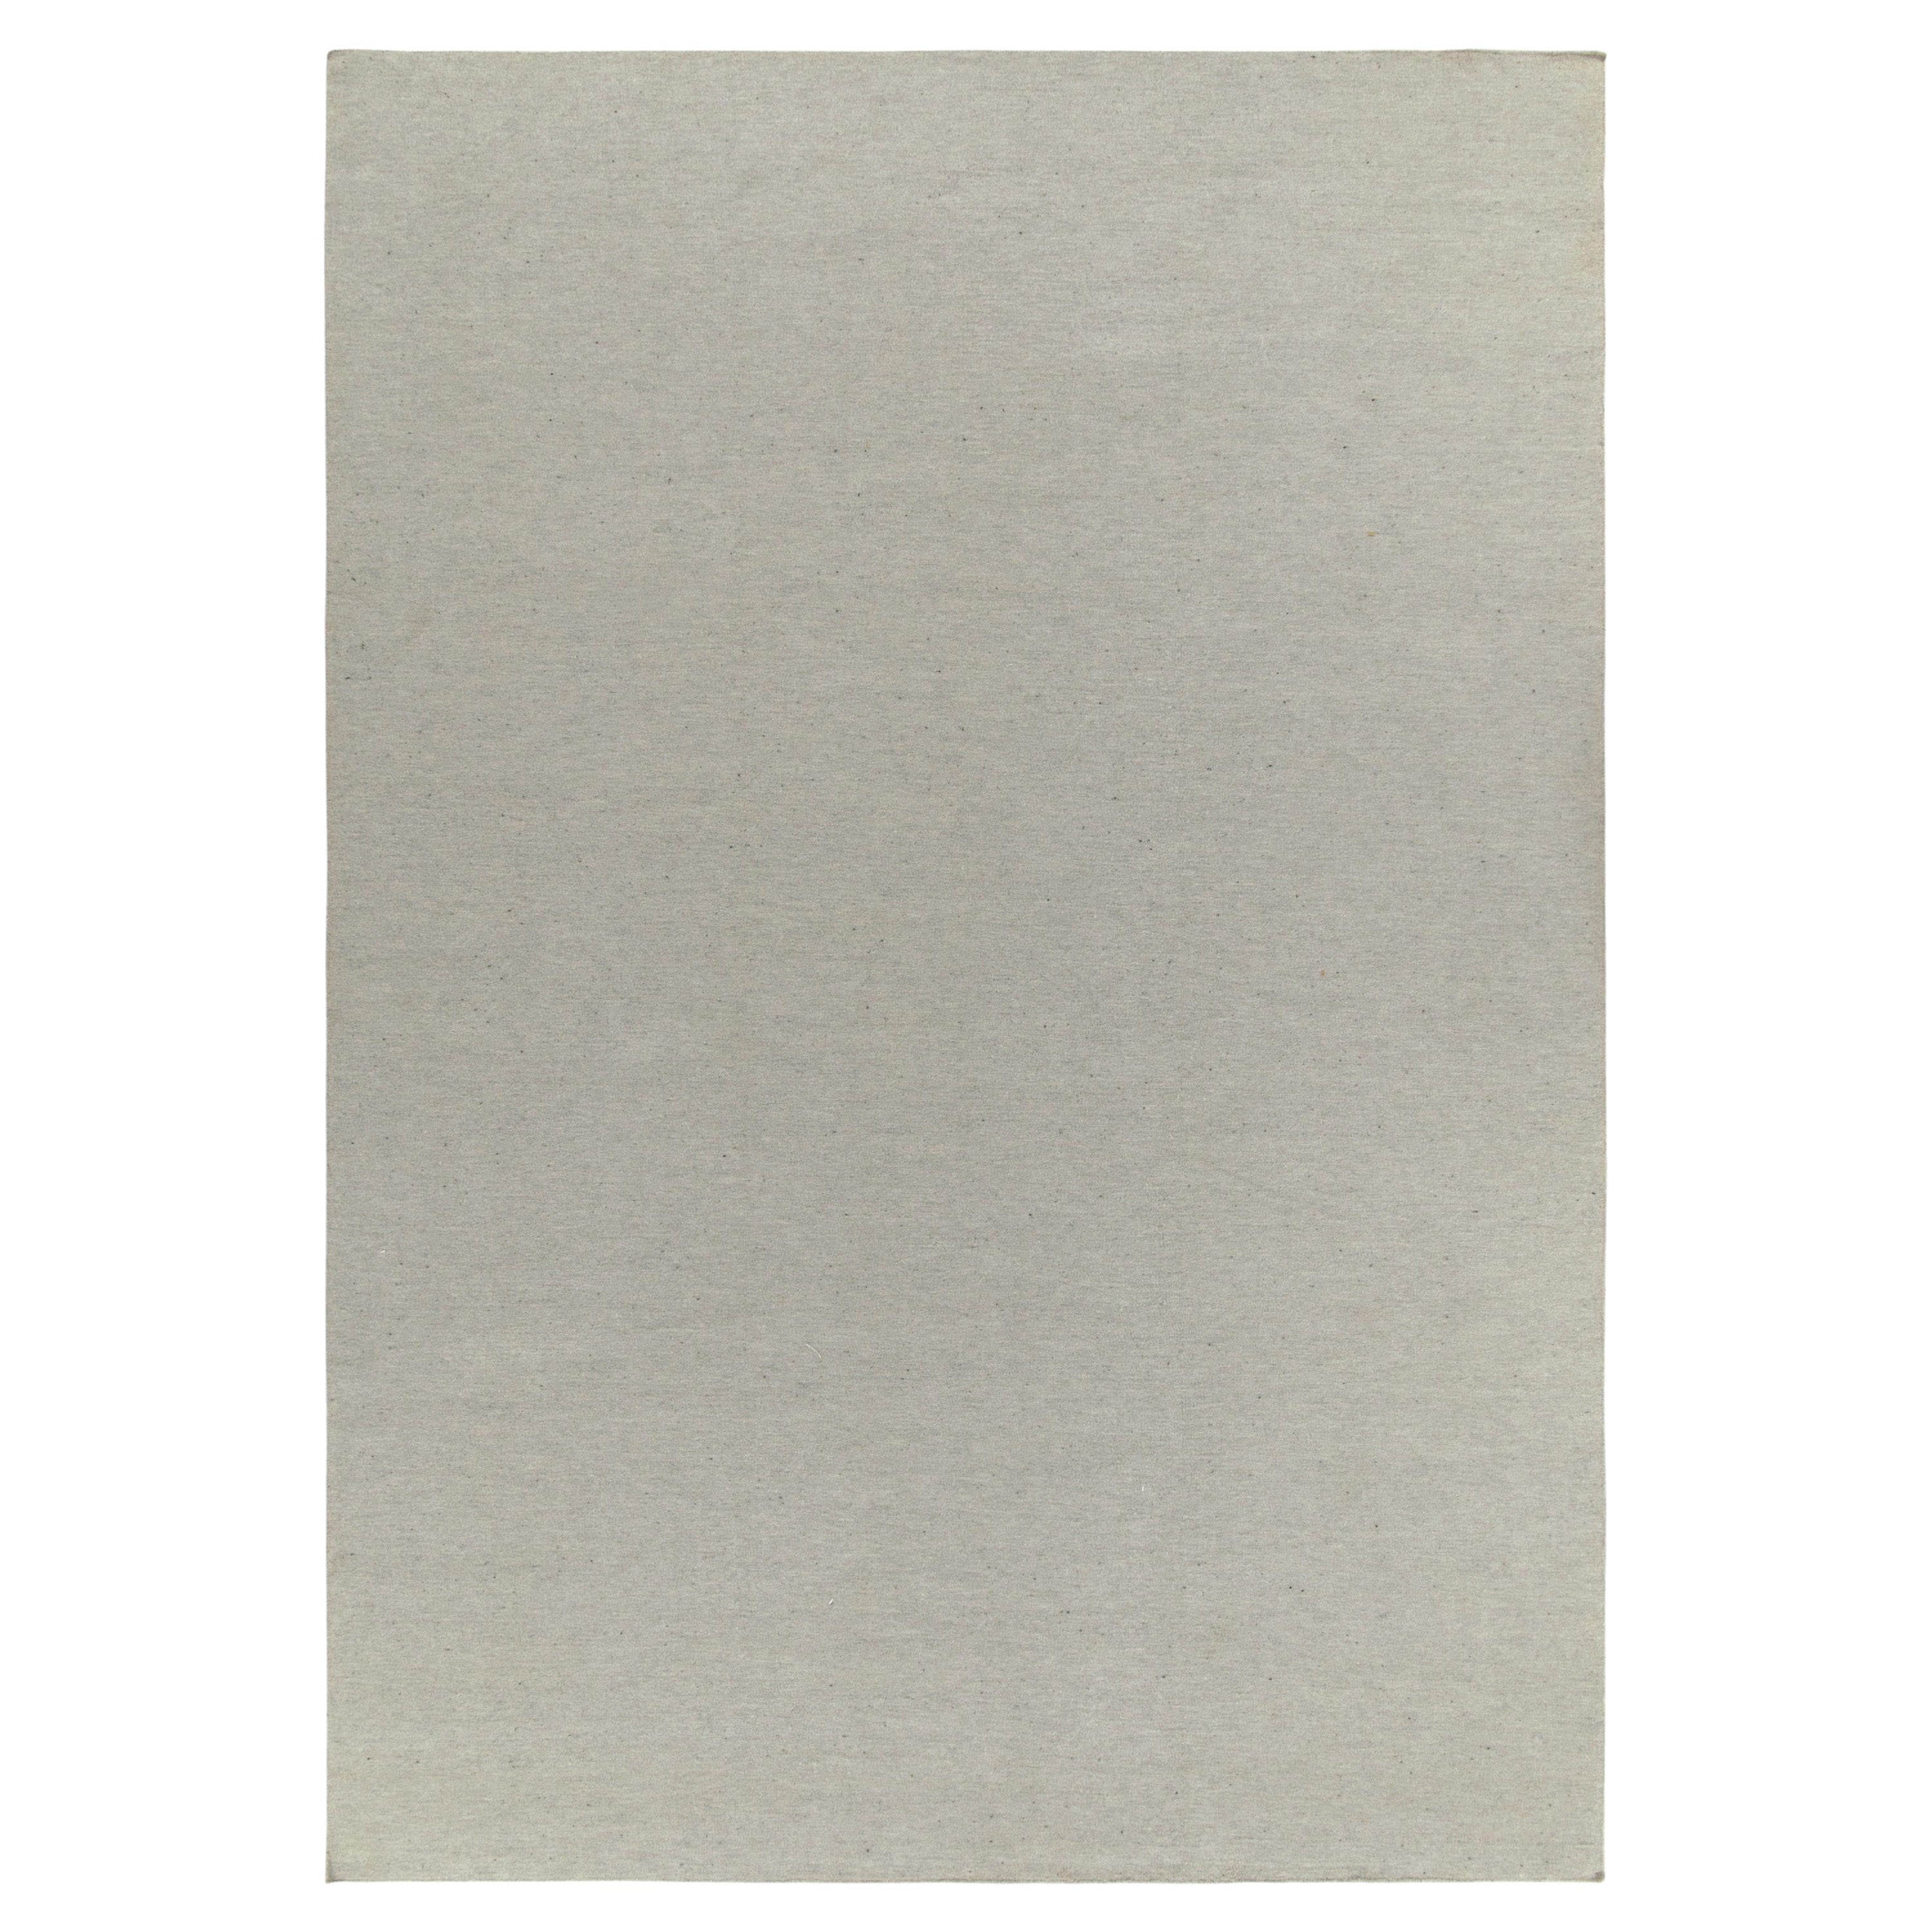 Parmi les œuvres contemporaines de Rug & Kilim, un tissage plat moderne 10x15 tissé à la main à partir d'un fil fin d'Alpaga. Les tons simples et magnifiques de gris et de blanc jouent doucement avec un léger élément de striation, complétant la